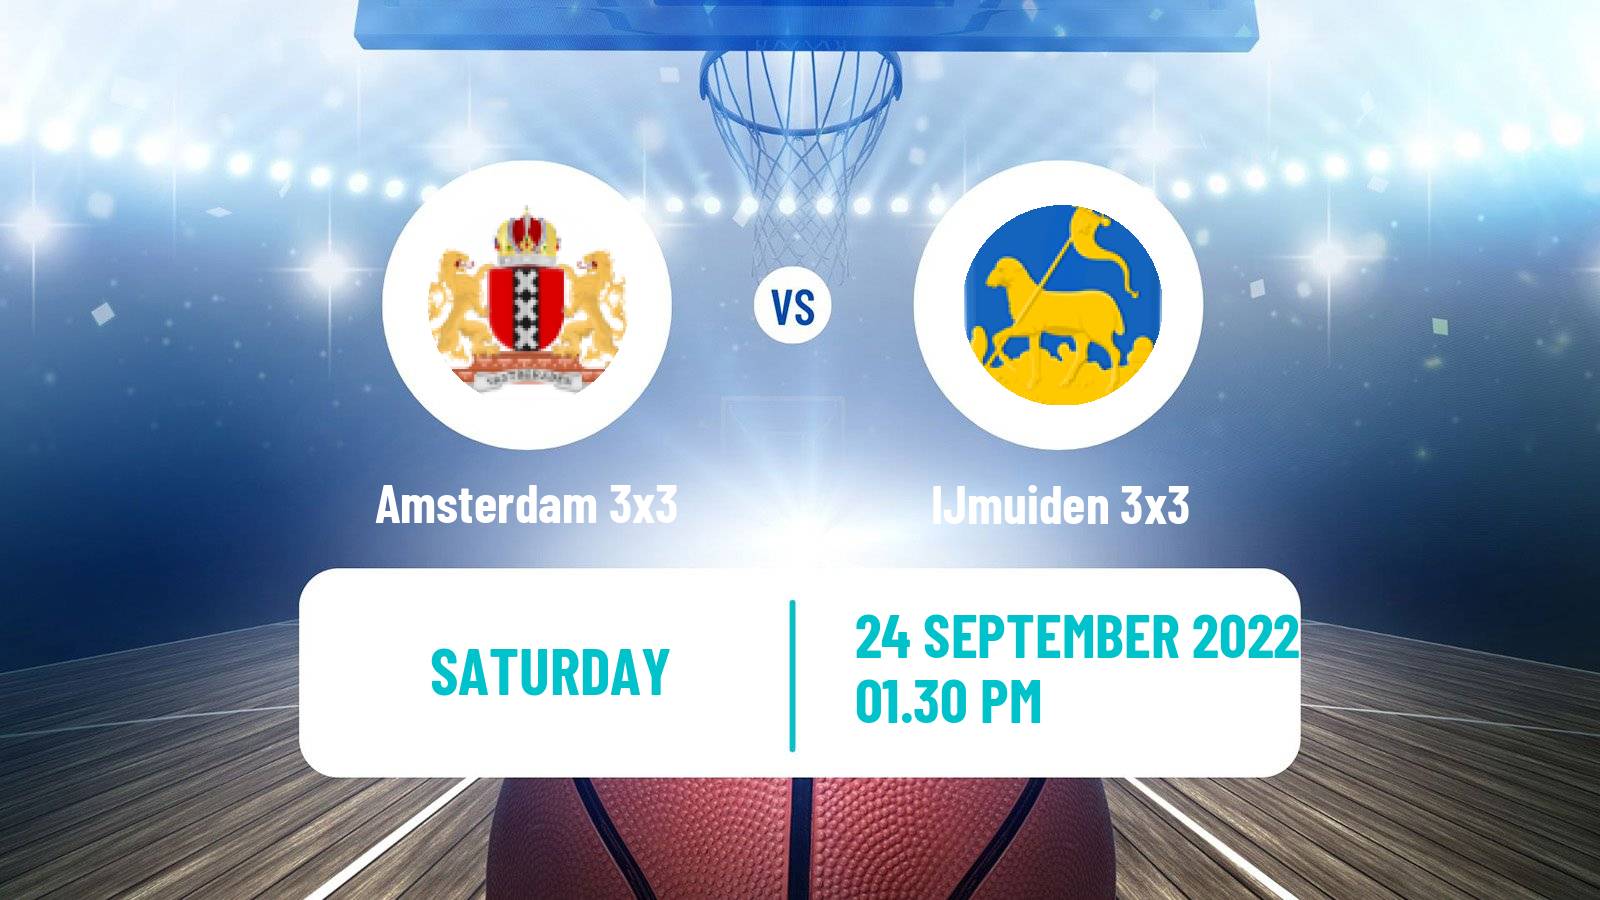 Basketball World Tour Utrecht 3x3 Amsterdam 3x3 - IJmuiden 3x3